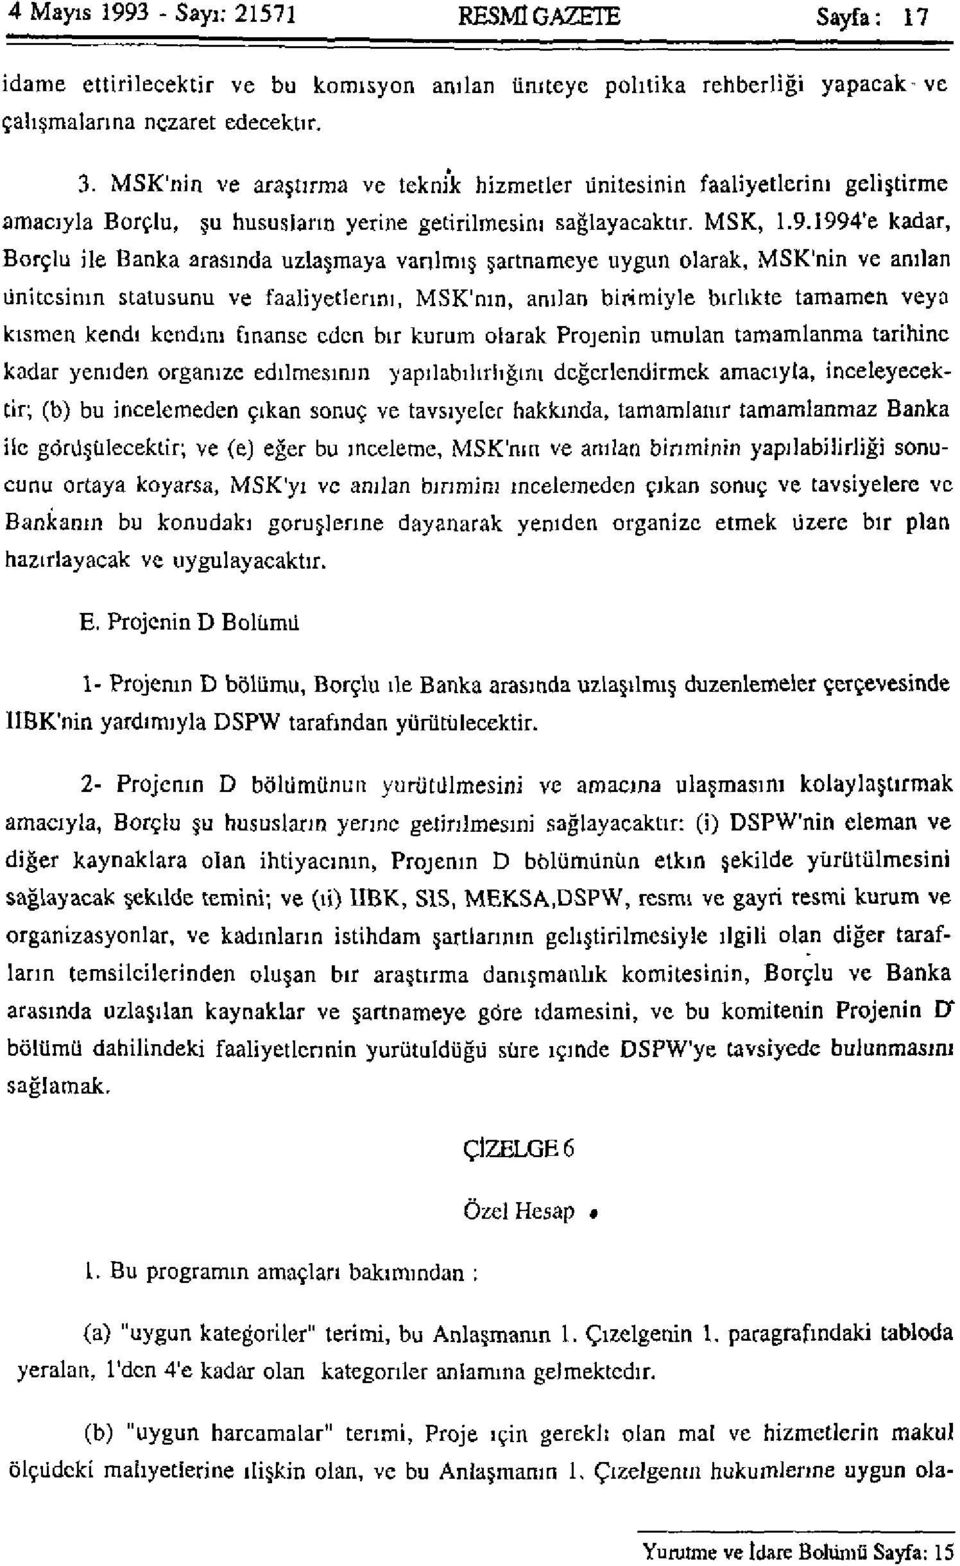 1994'e kadar, Borçlu ile Banka arasında uzlaşmaya varılmış şartnameye uygun olarak, MSK'nin ve anılan ünitesinin statüsünü ve faaliyetlerini, MSK'nin, anılan birimiyle birlikte tamamen veya kısmen